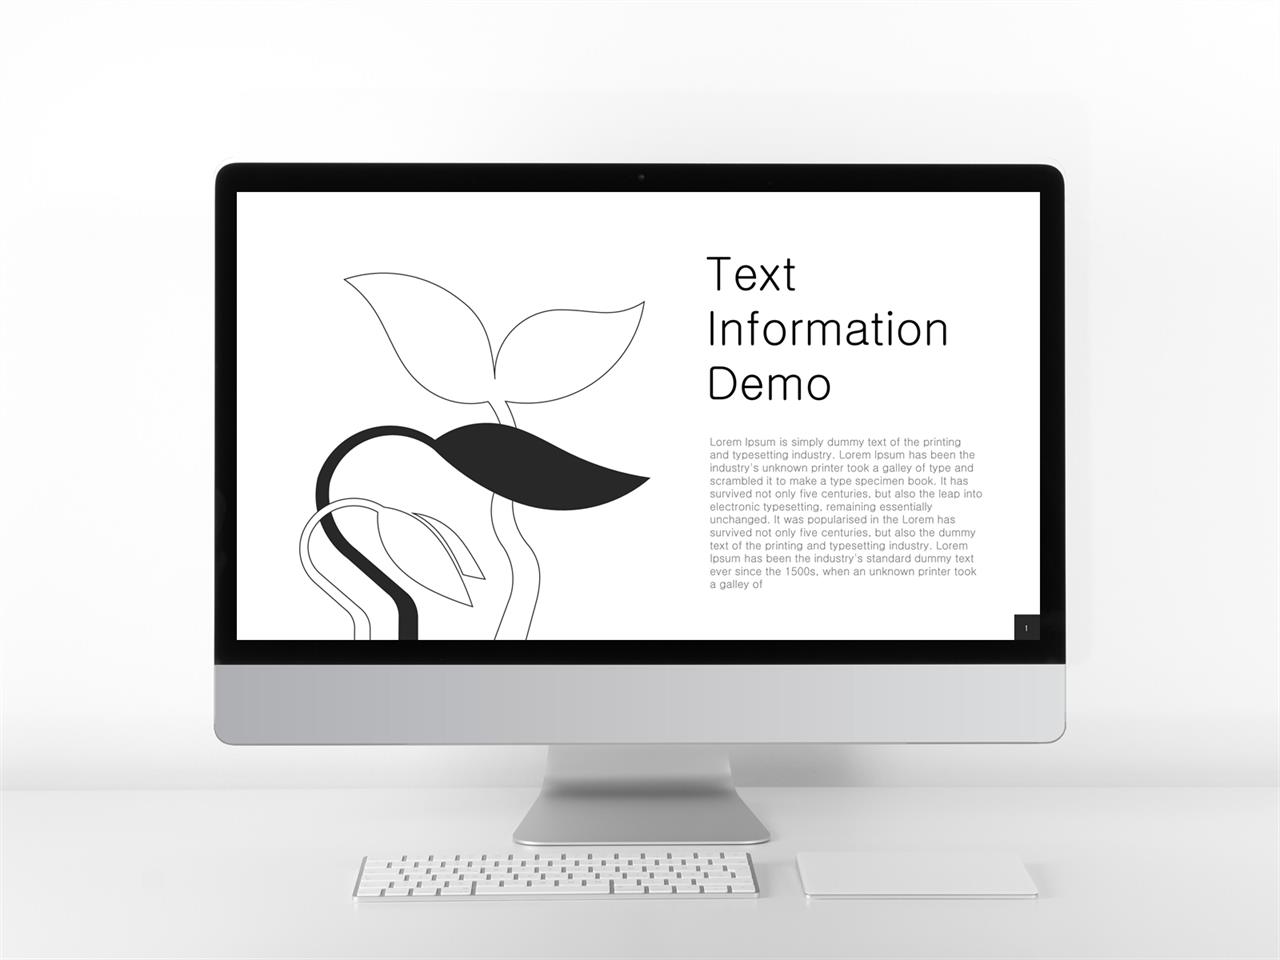 PPT인포그래픽 화초  멋진 파워포인트탬플릿 다운 미리보기